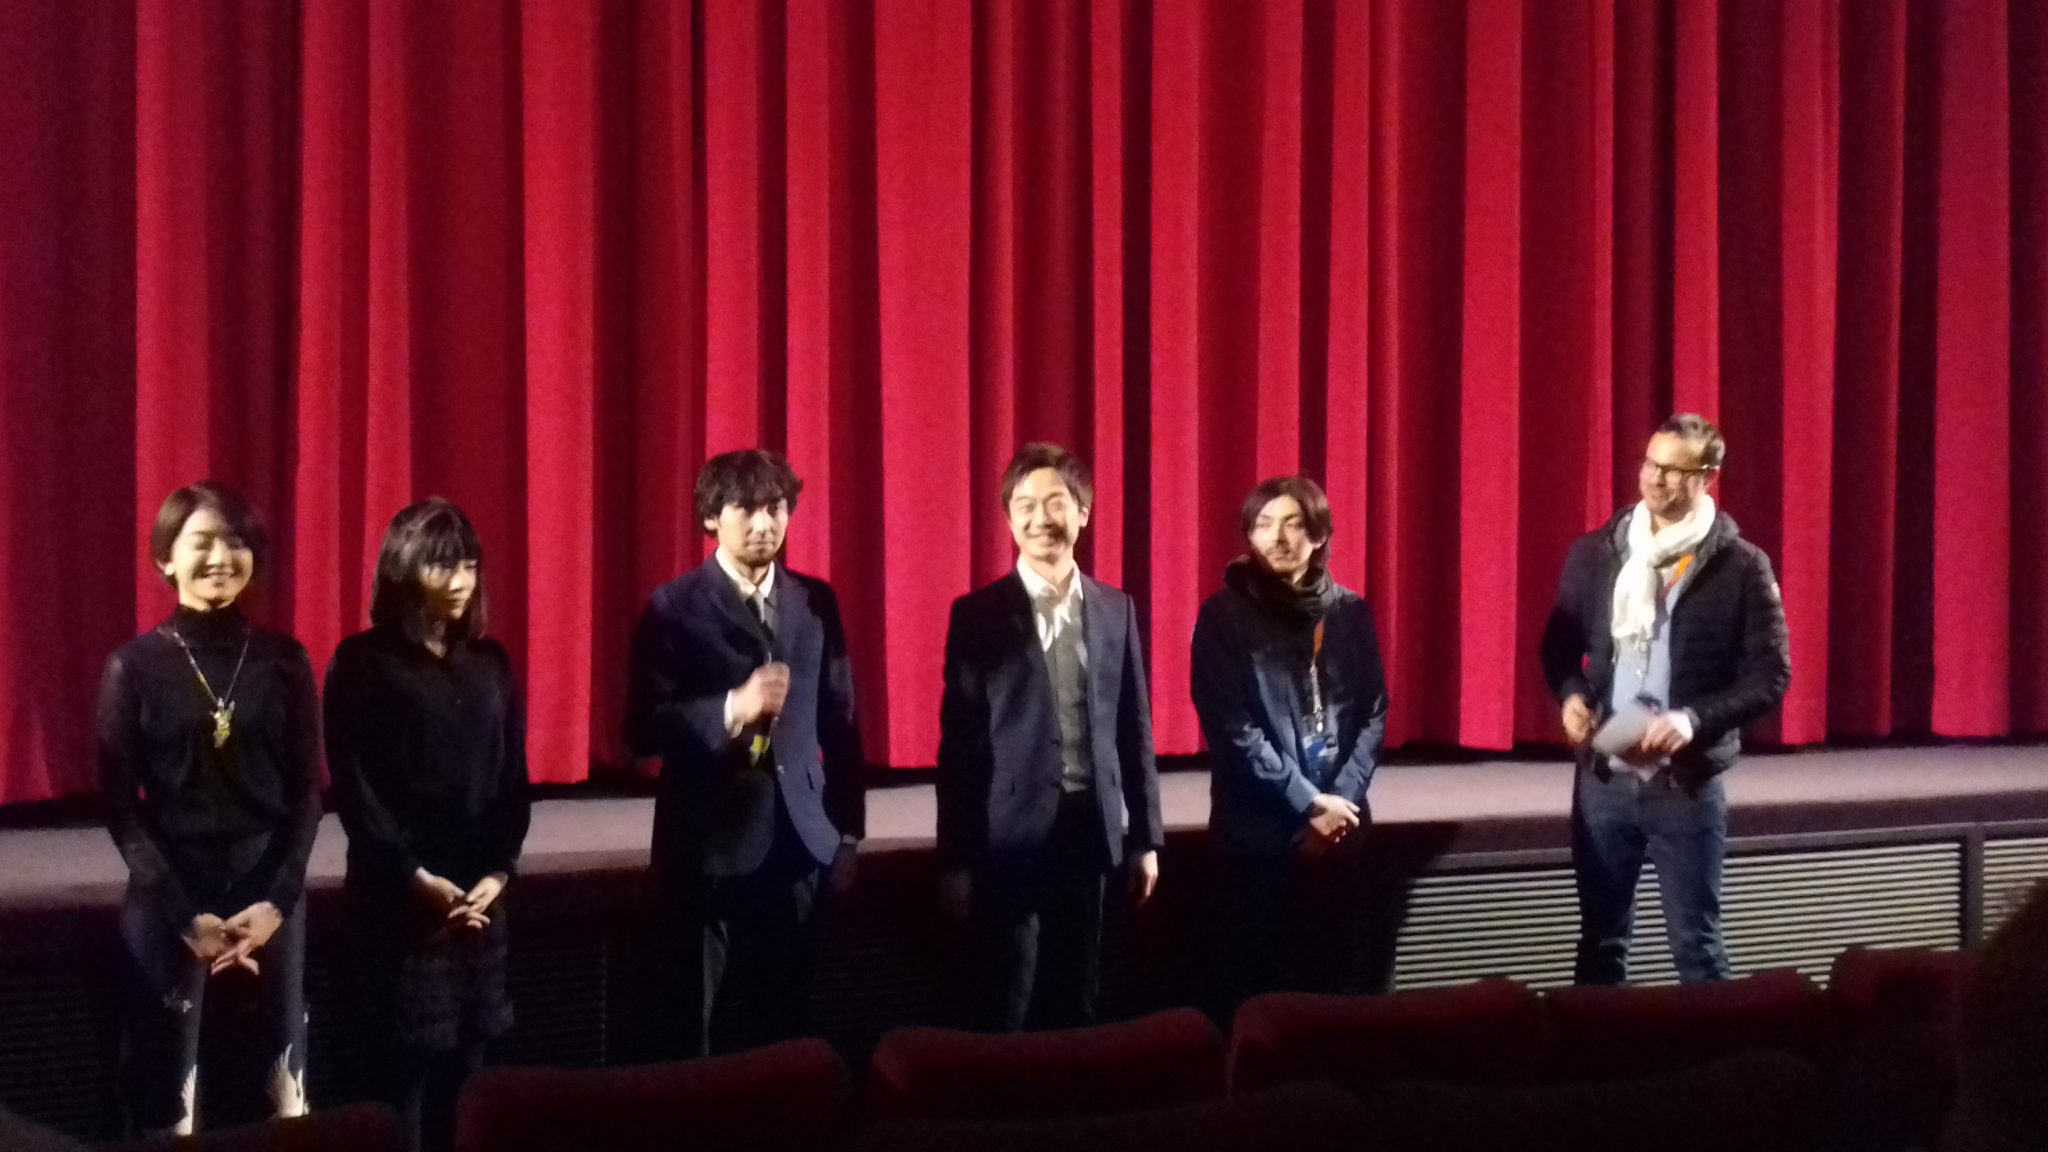 Filmo „Trys šviesos“ (jap. „Mittsu no hikari“) pristatymas. Dalyvauja filmo režisierius Kôki Yoshida (antras iš dešinės) ir filmo aktoriai